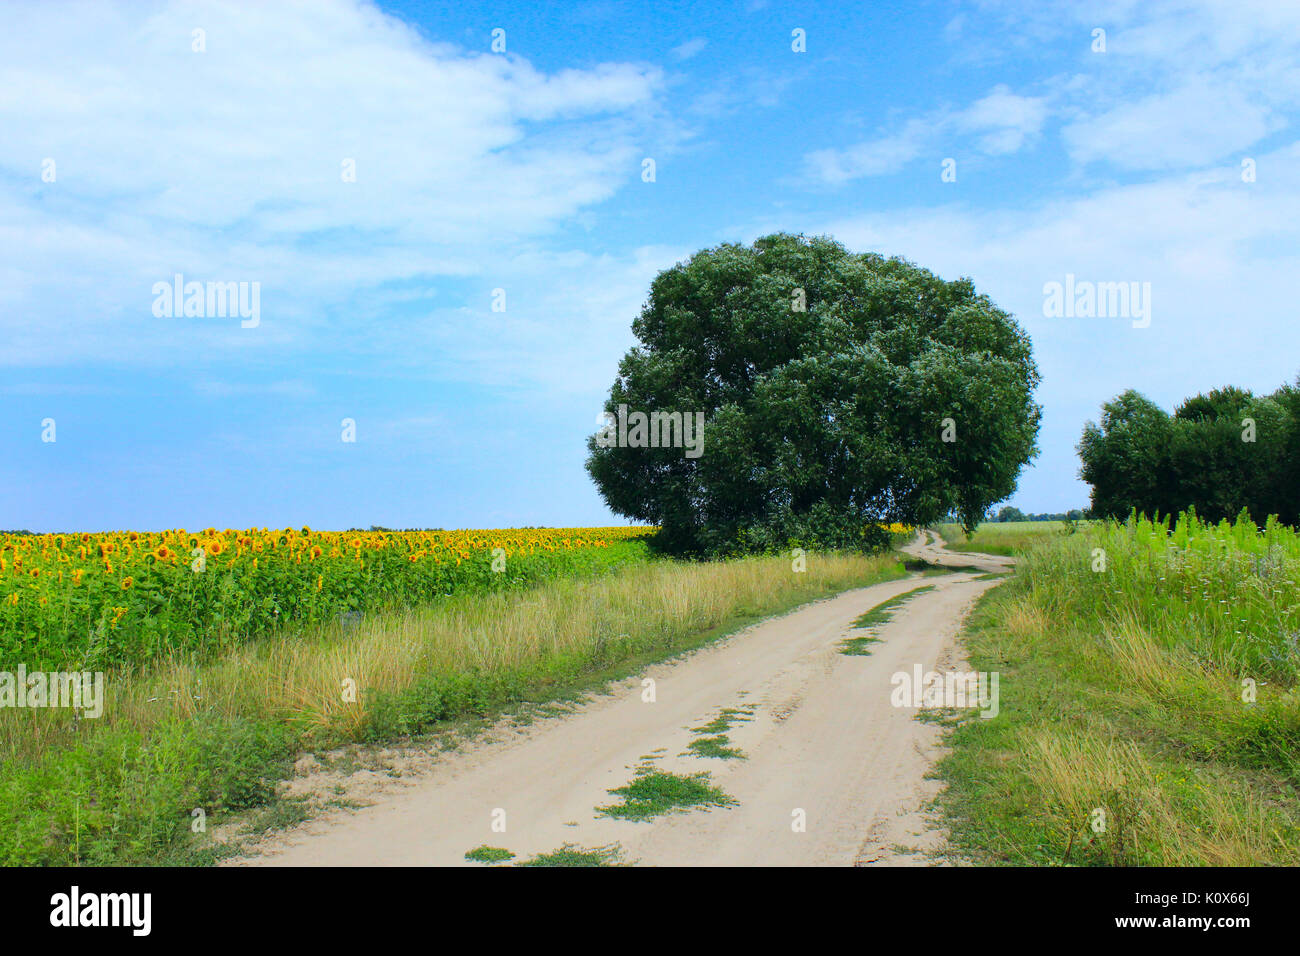 In estate il paesaggio con le strade di campagna e campi di girasoli Foto Stock